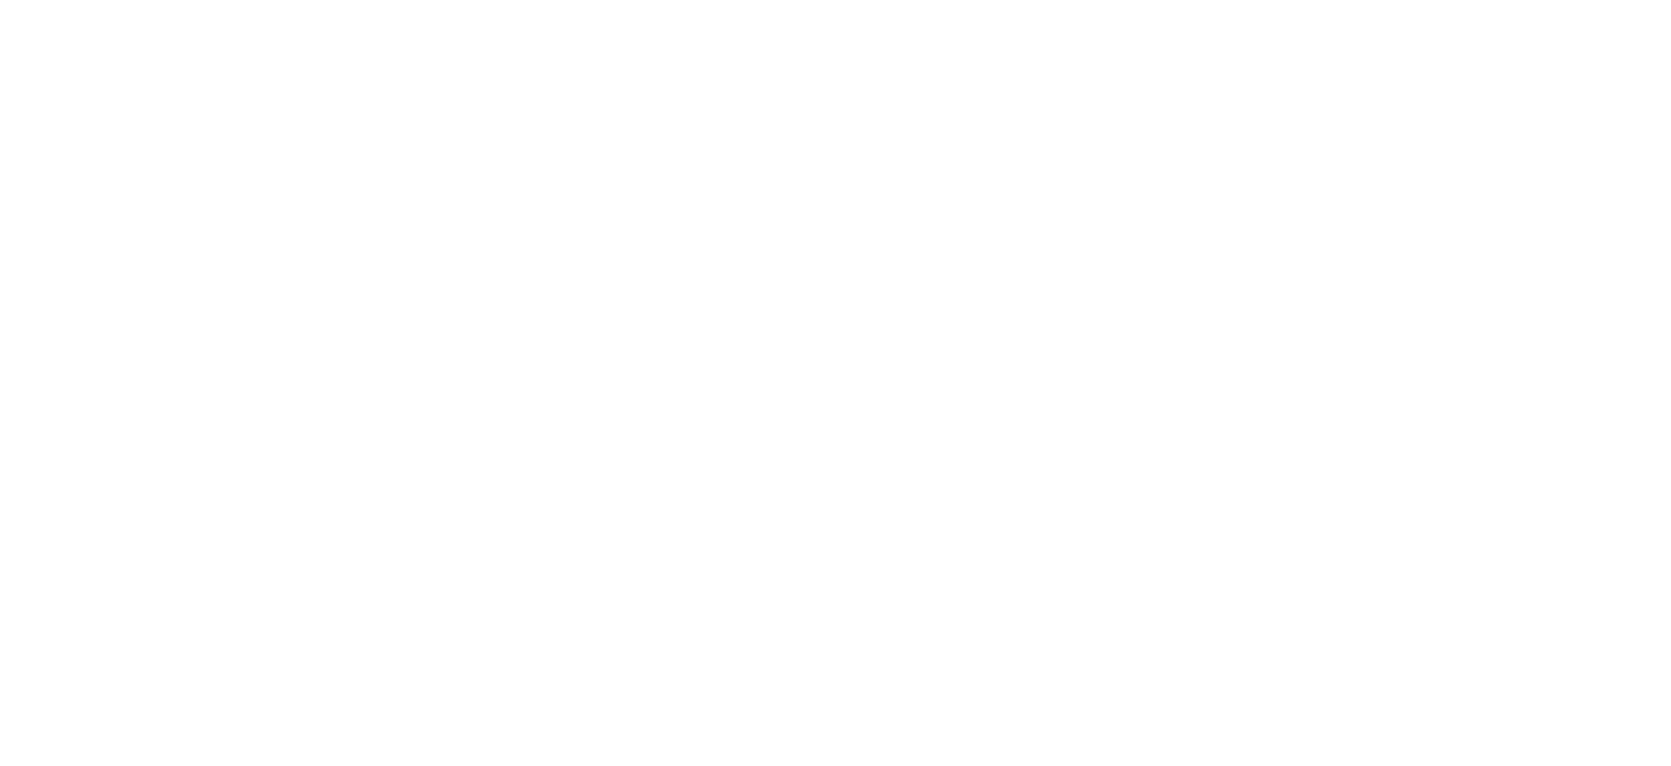 SNC-Lavalin Group logo grand pour les fonds sombres (PNG transparent)